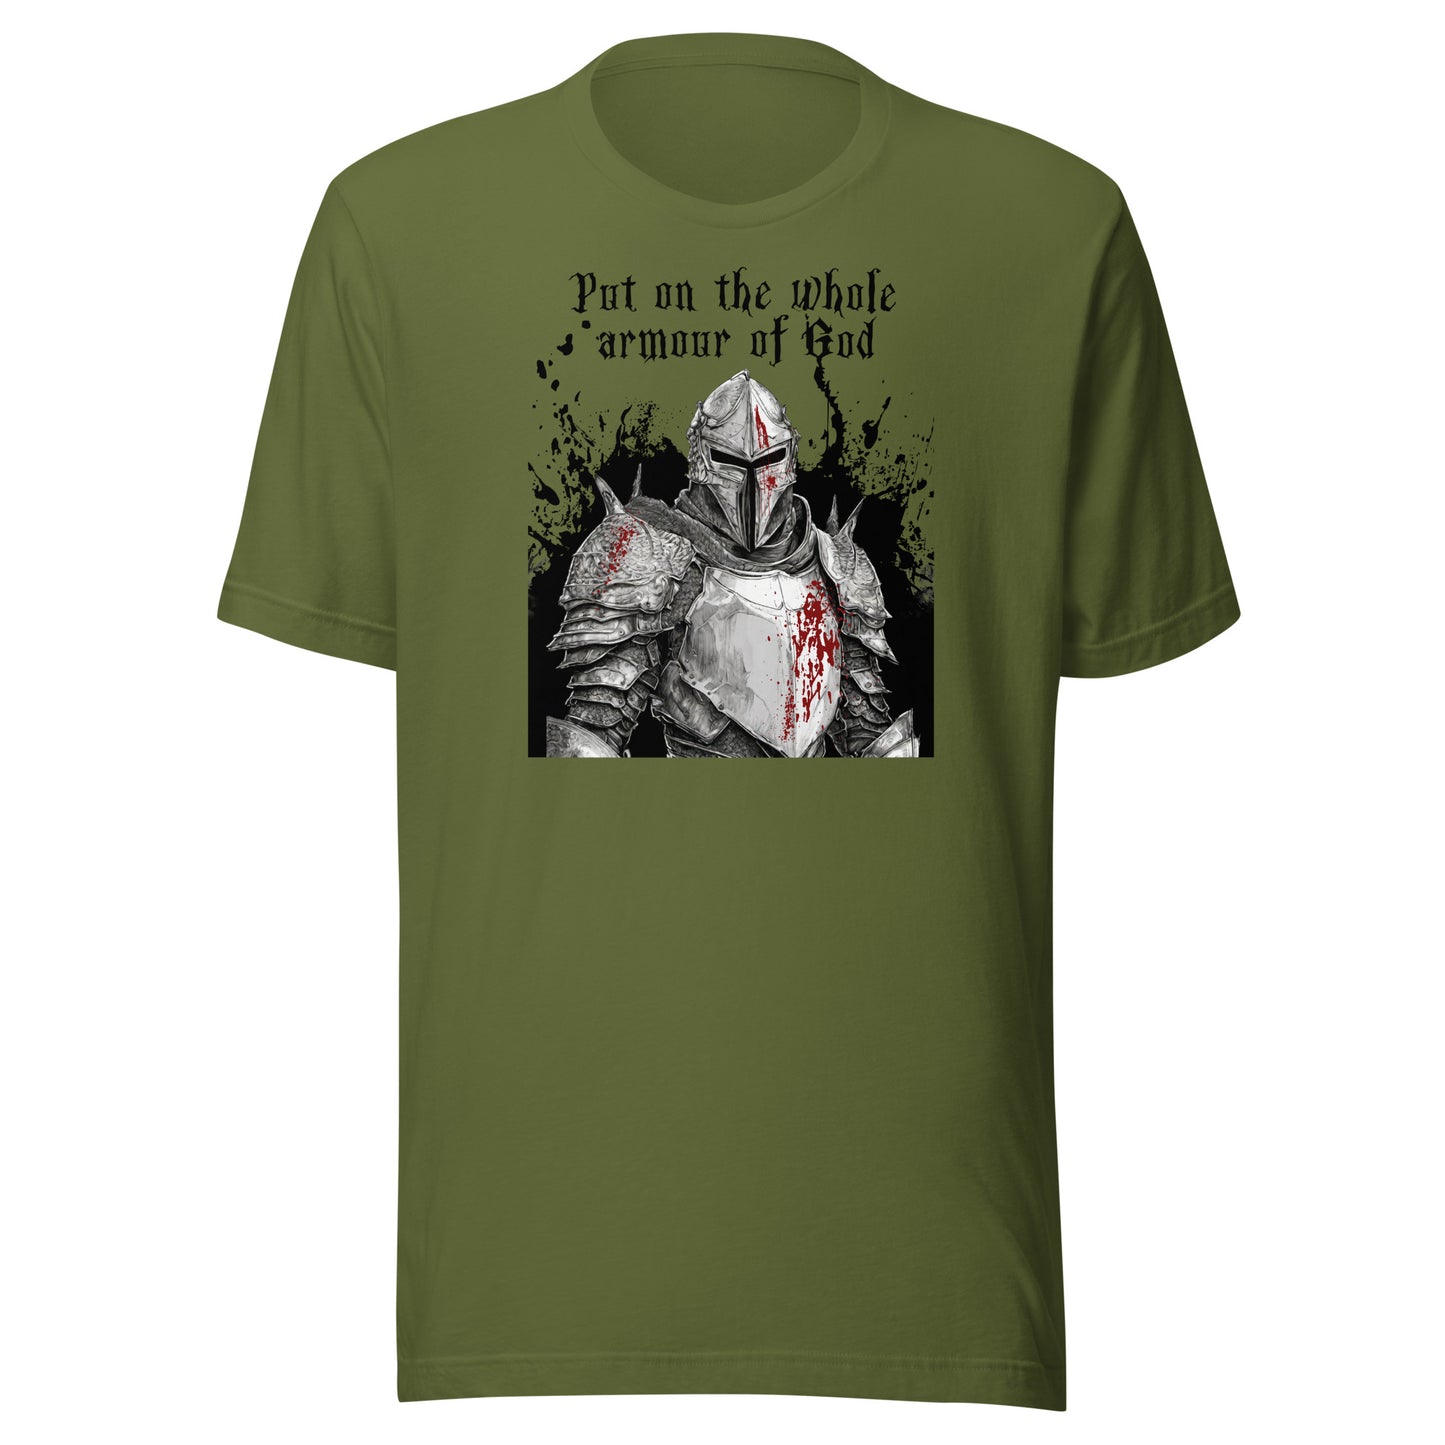 Armor of God Men's Christian T-Shirt Olive